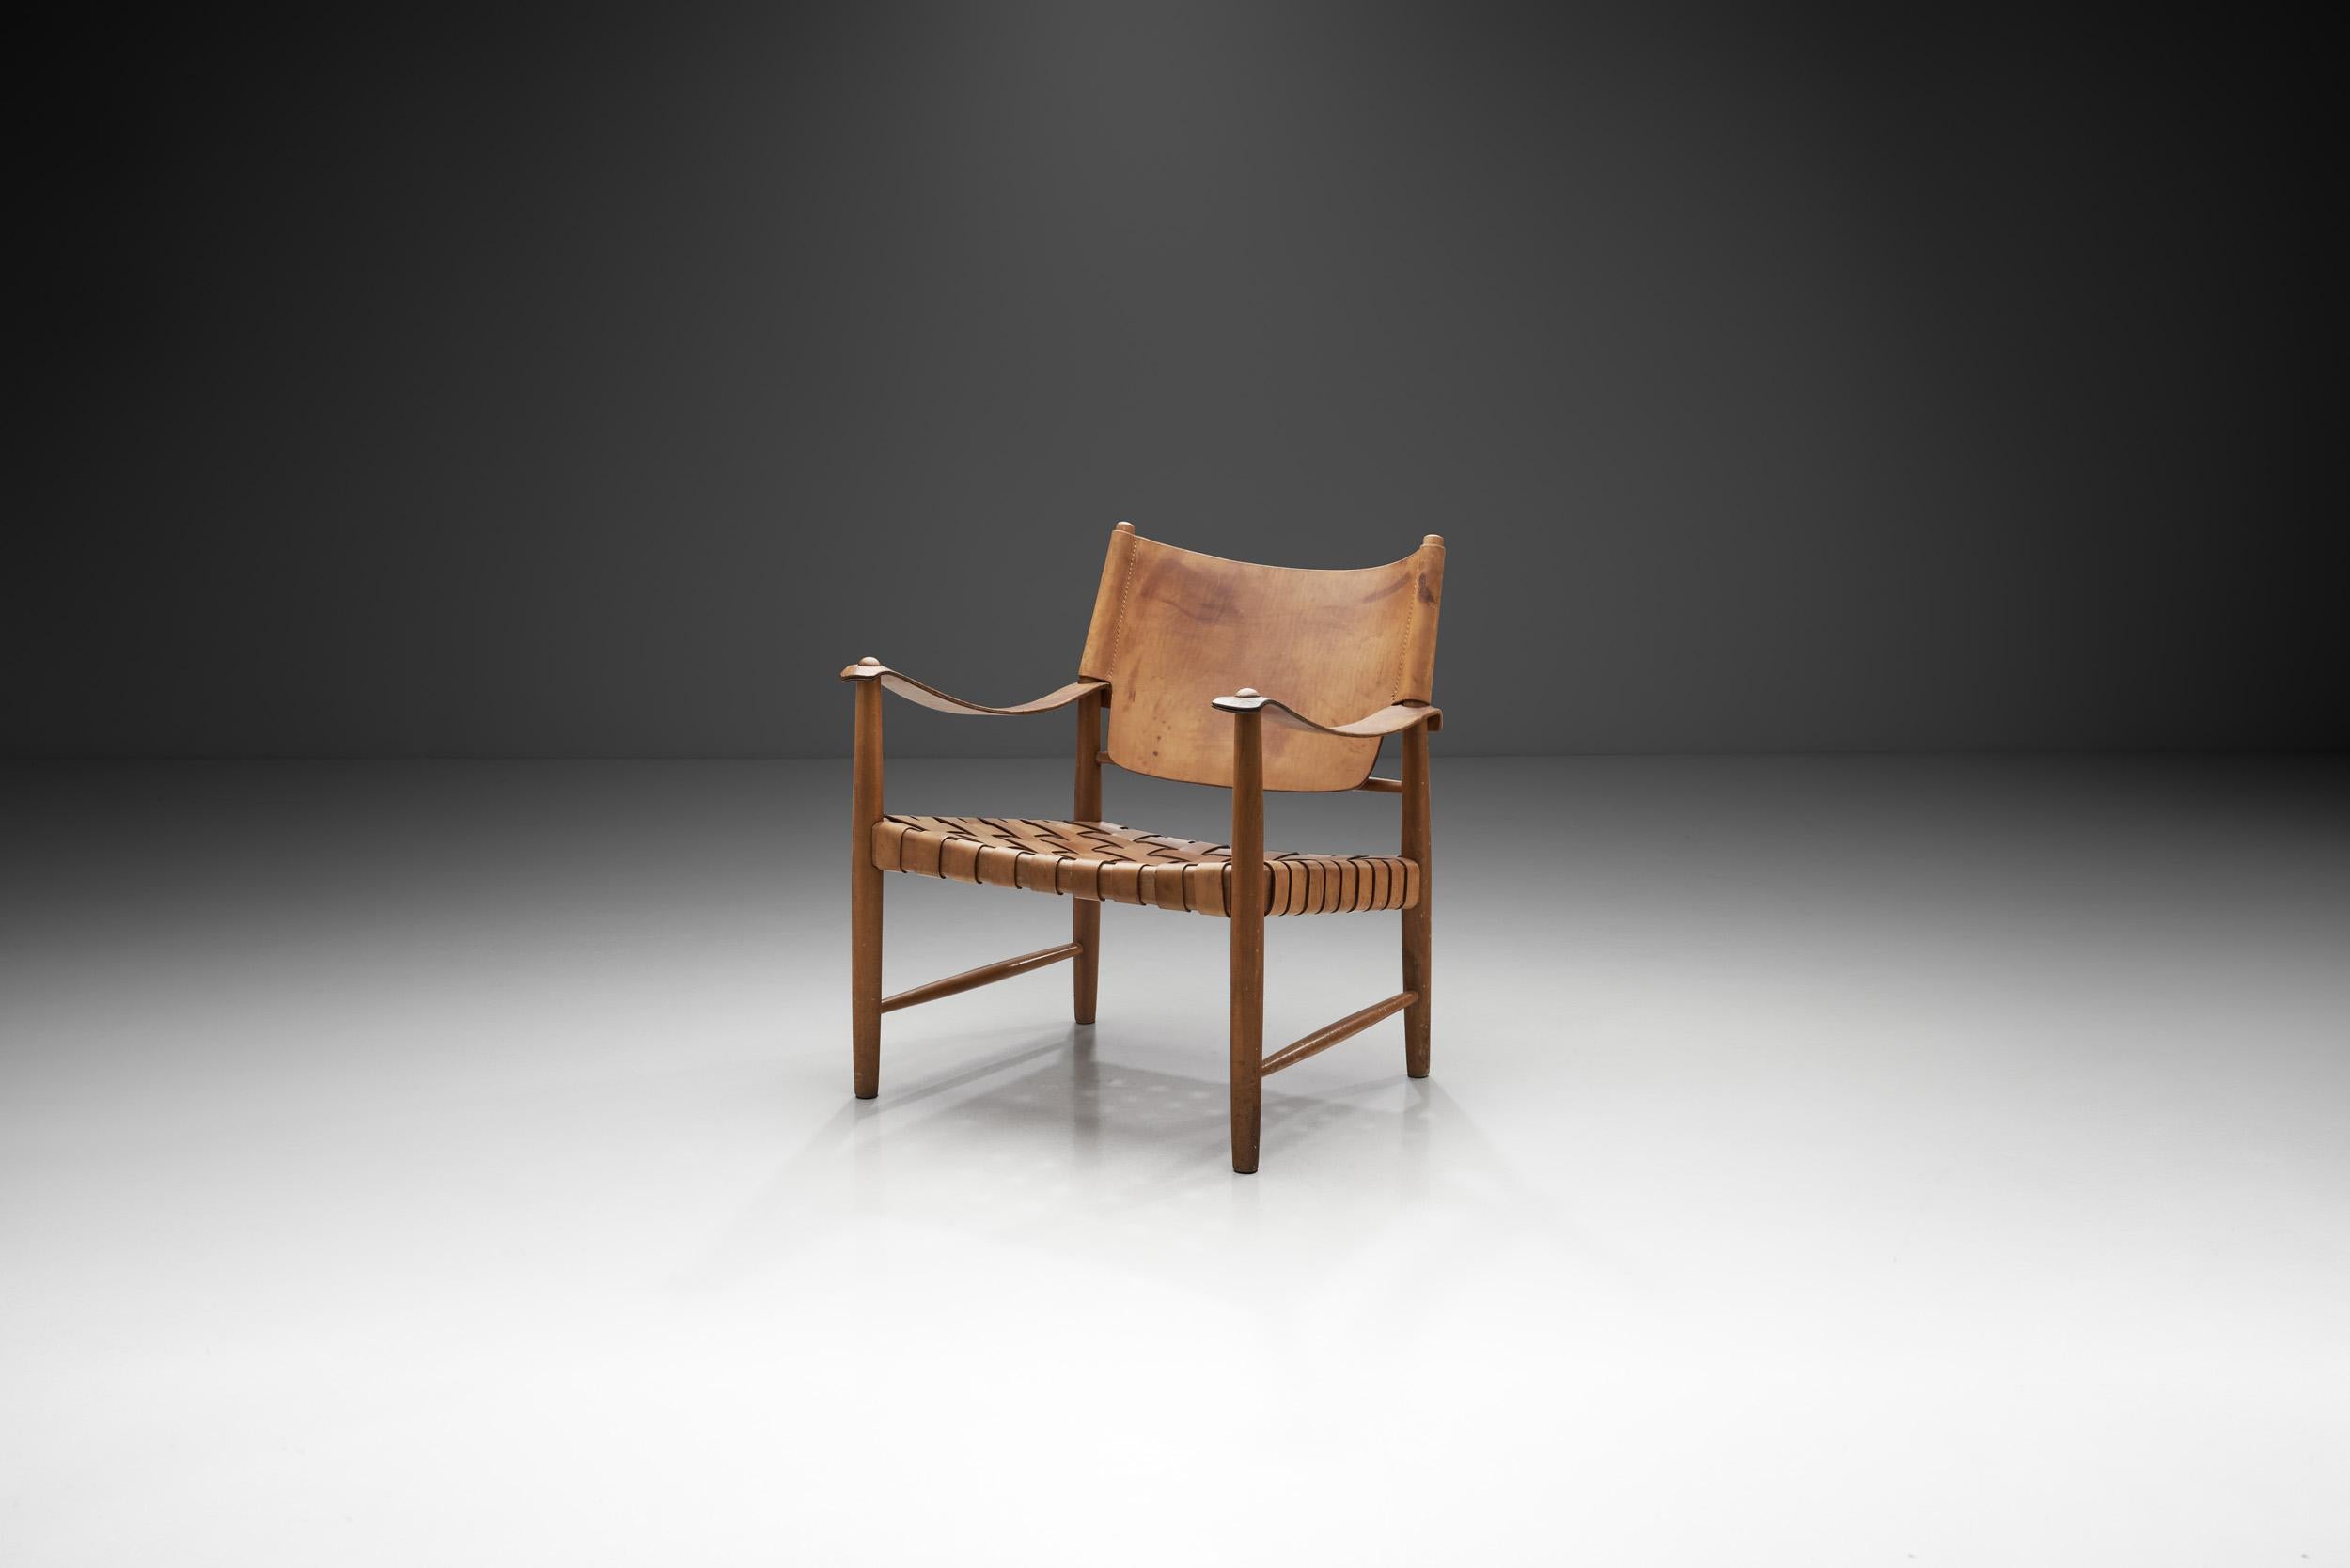 Le design de cette chaise remarquable est basé sur une longue tradition de chaises de safari. D'Eileen Gray à Kaare Klint et Elias Svedberg, de nombreux grands designers ont réalisé des versions de ce siège auto-assemblé, qui trouve probablement son